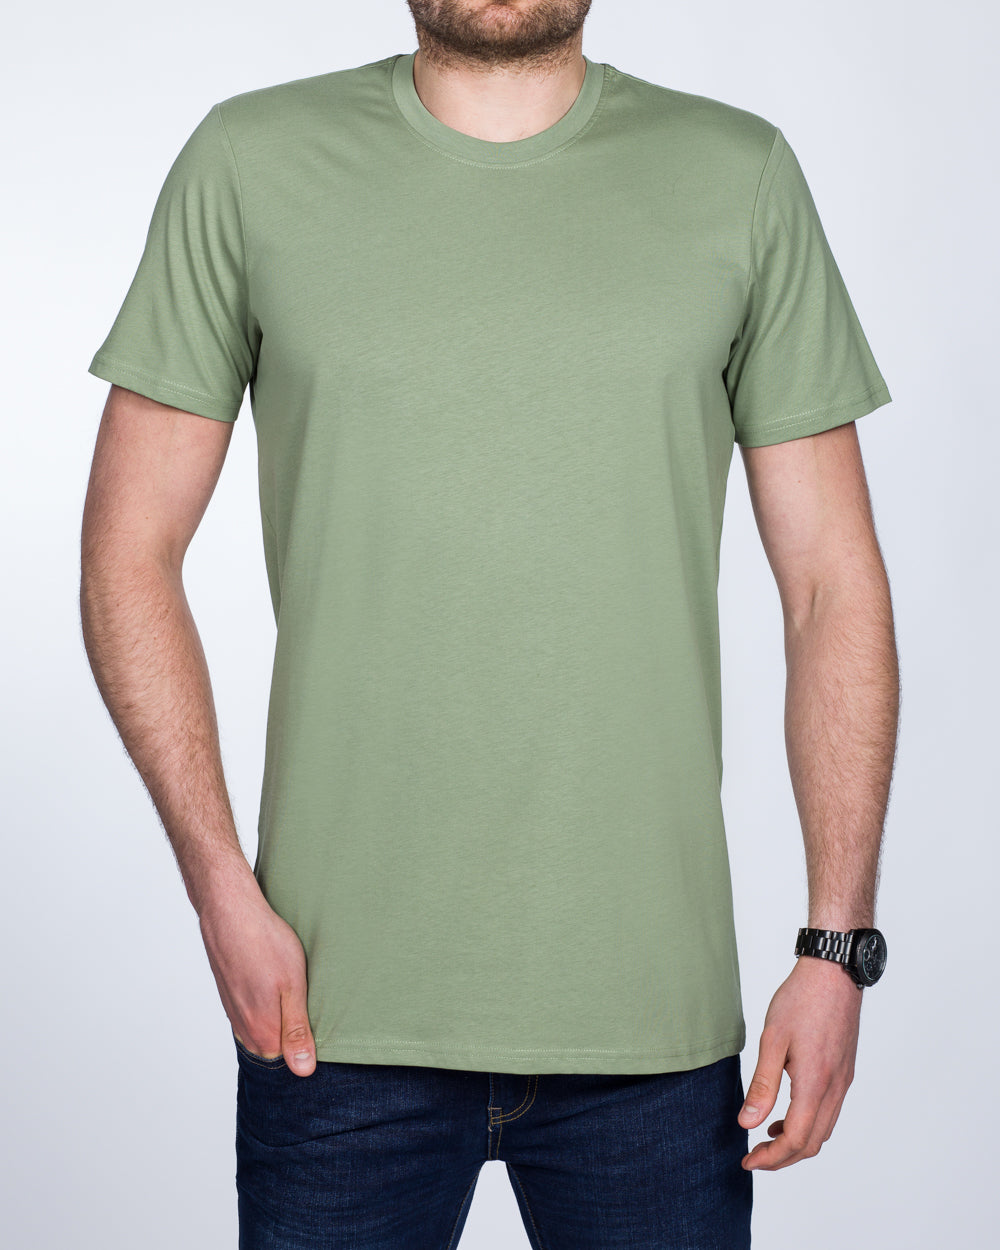 Girav Sydney Tall T-Shirt (sea green)